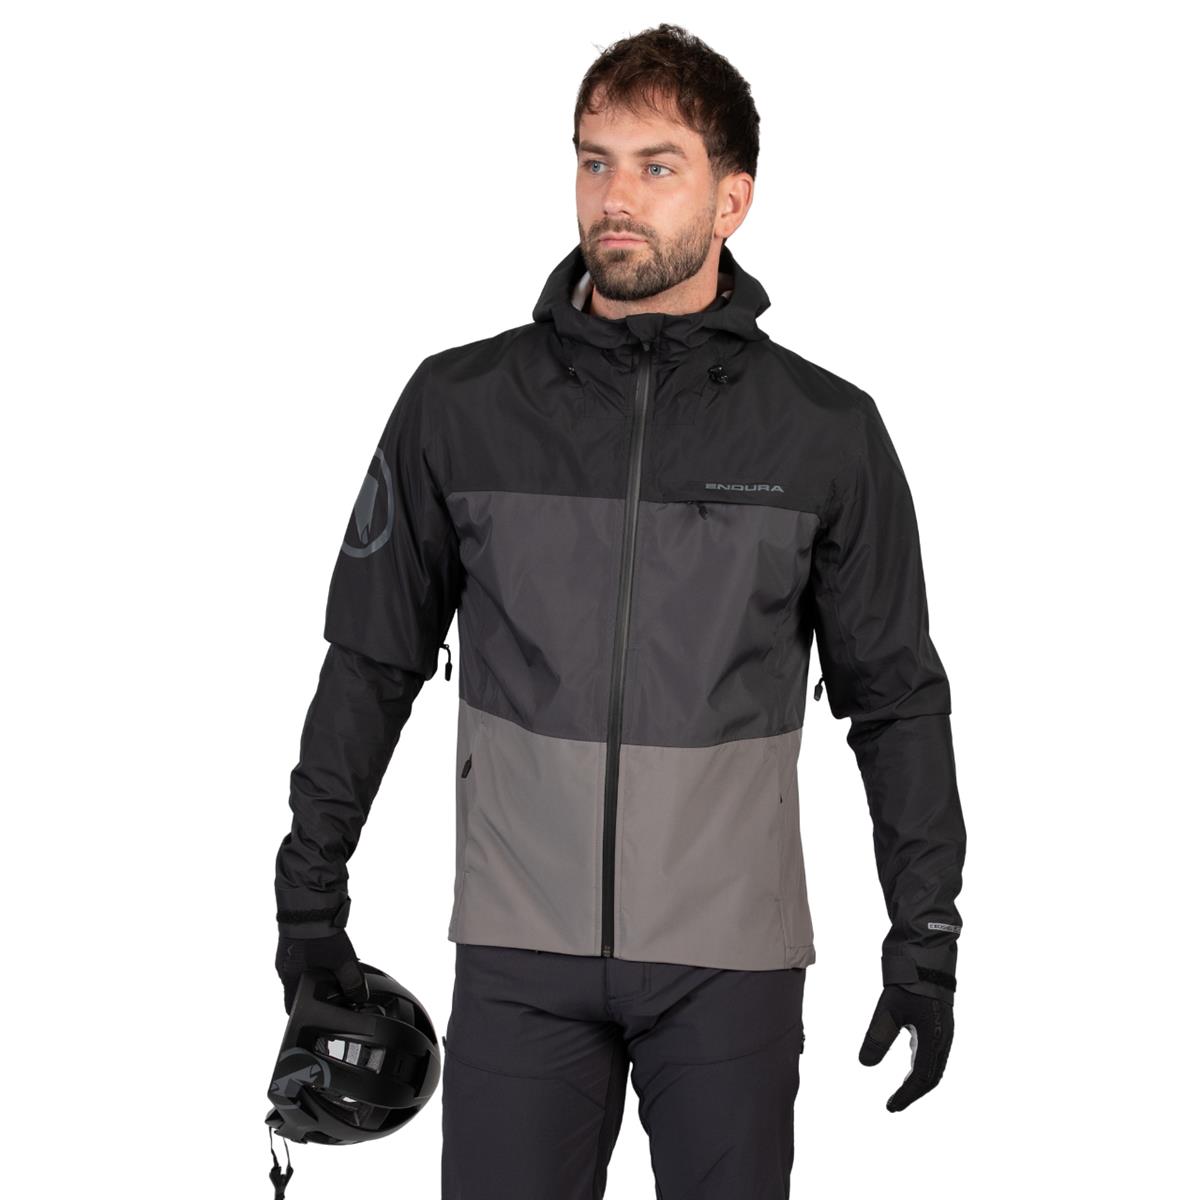 SingleTrack Jacket II Waterproof MTB Jacket Black Size L